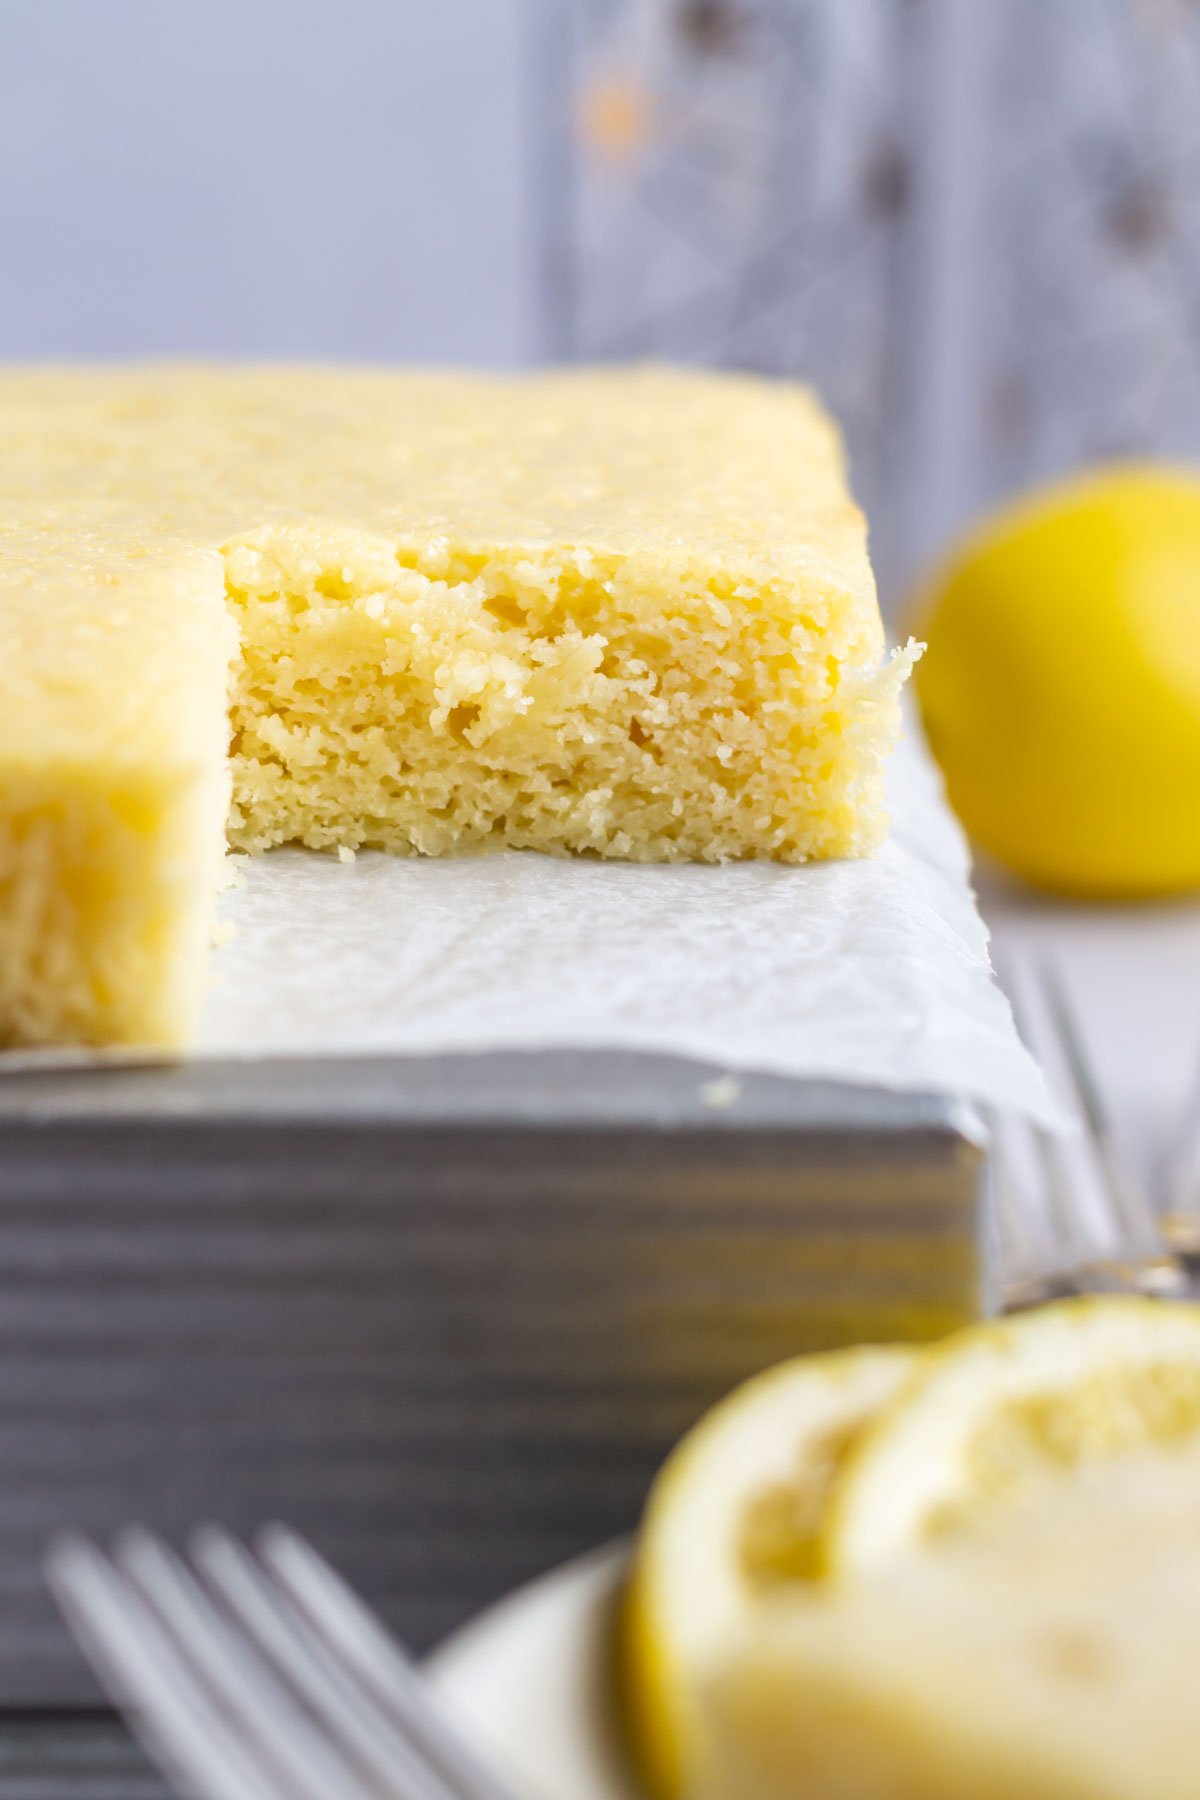 lemon glazed cake with lemon slices